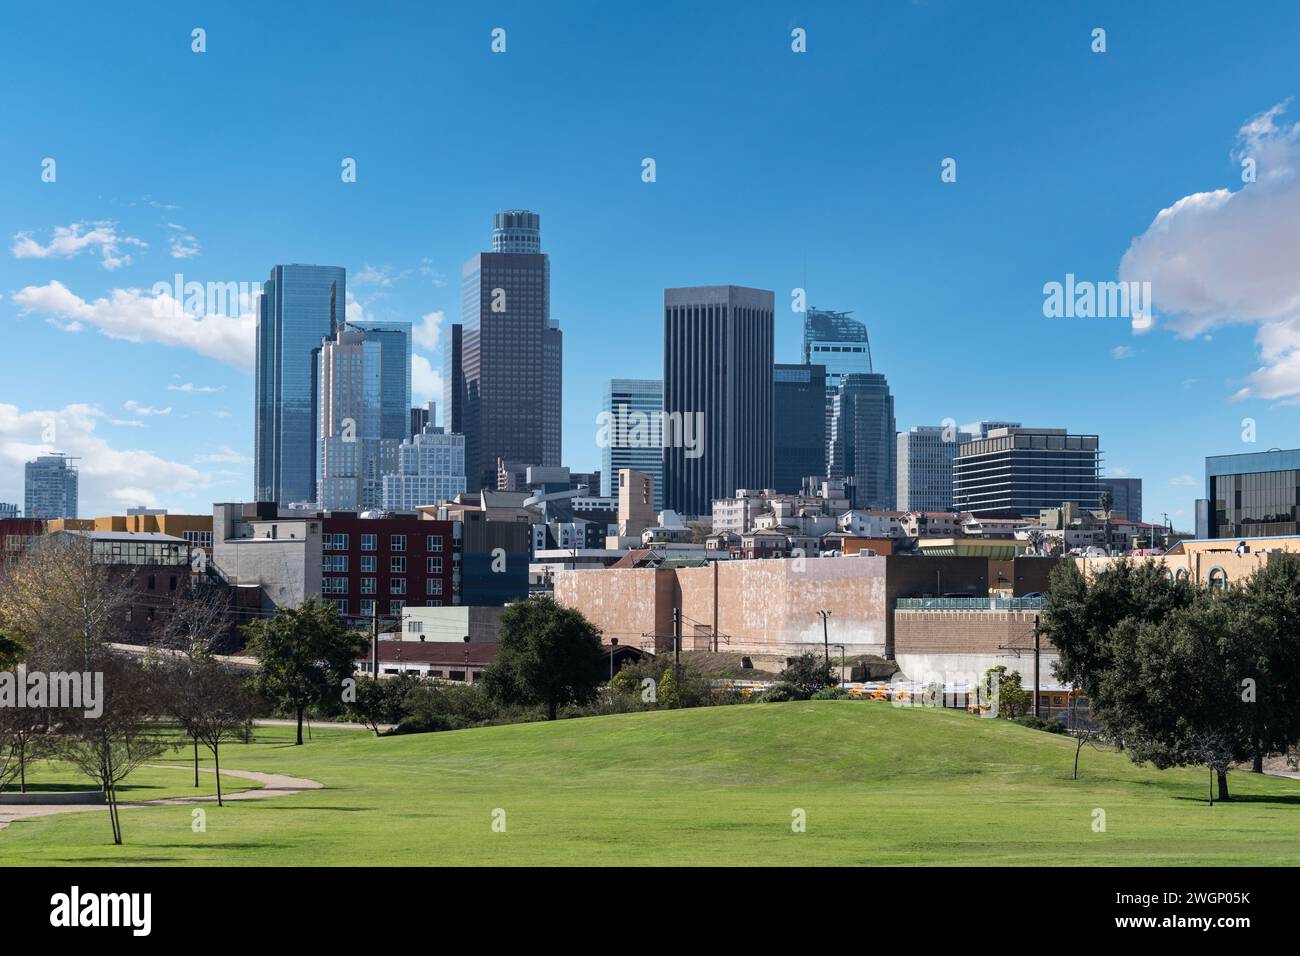 Skyline del centro di Los Angeles con un parco pubblico erboso in primo piano. Foto Stock